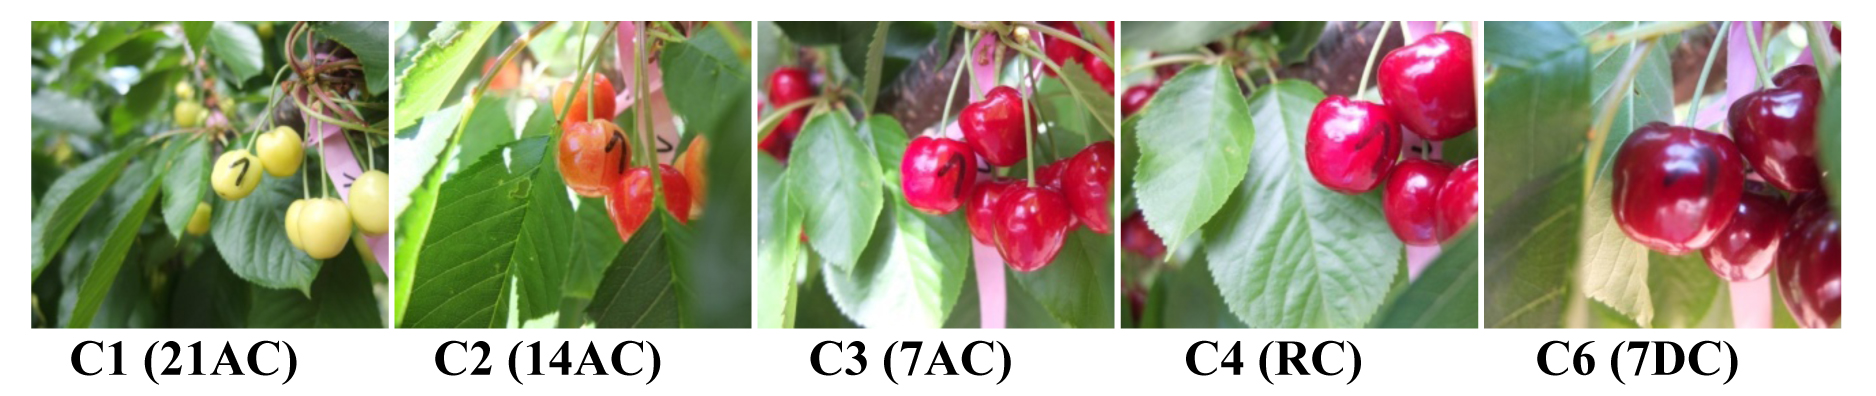 Figura 8. Evolucin del color visual de cerezas Lapins durante el desarrollo y maduracin de los frutos en el rbol